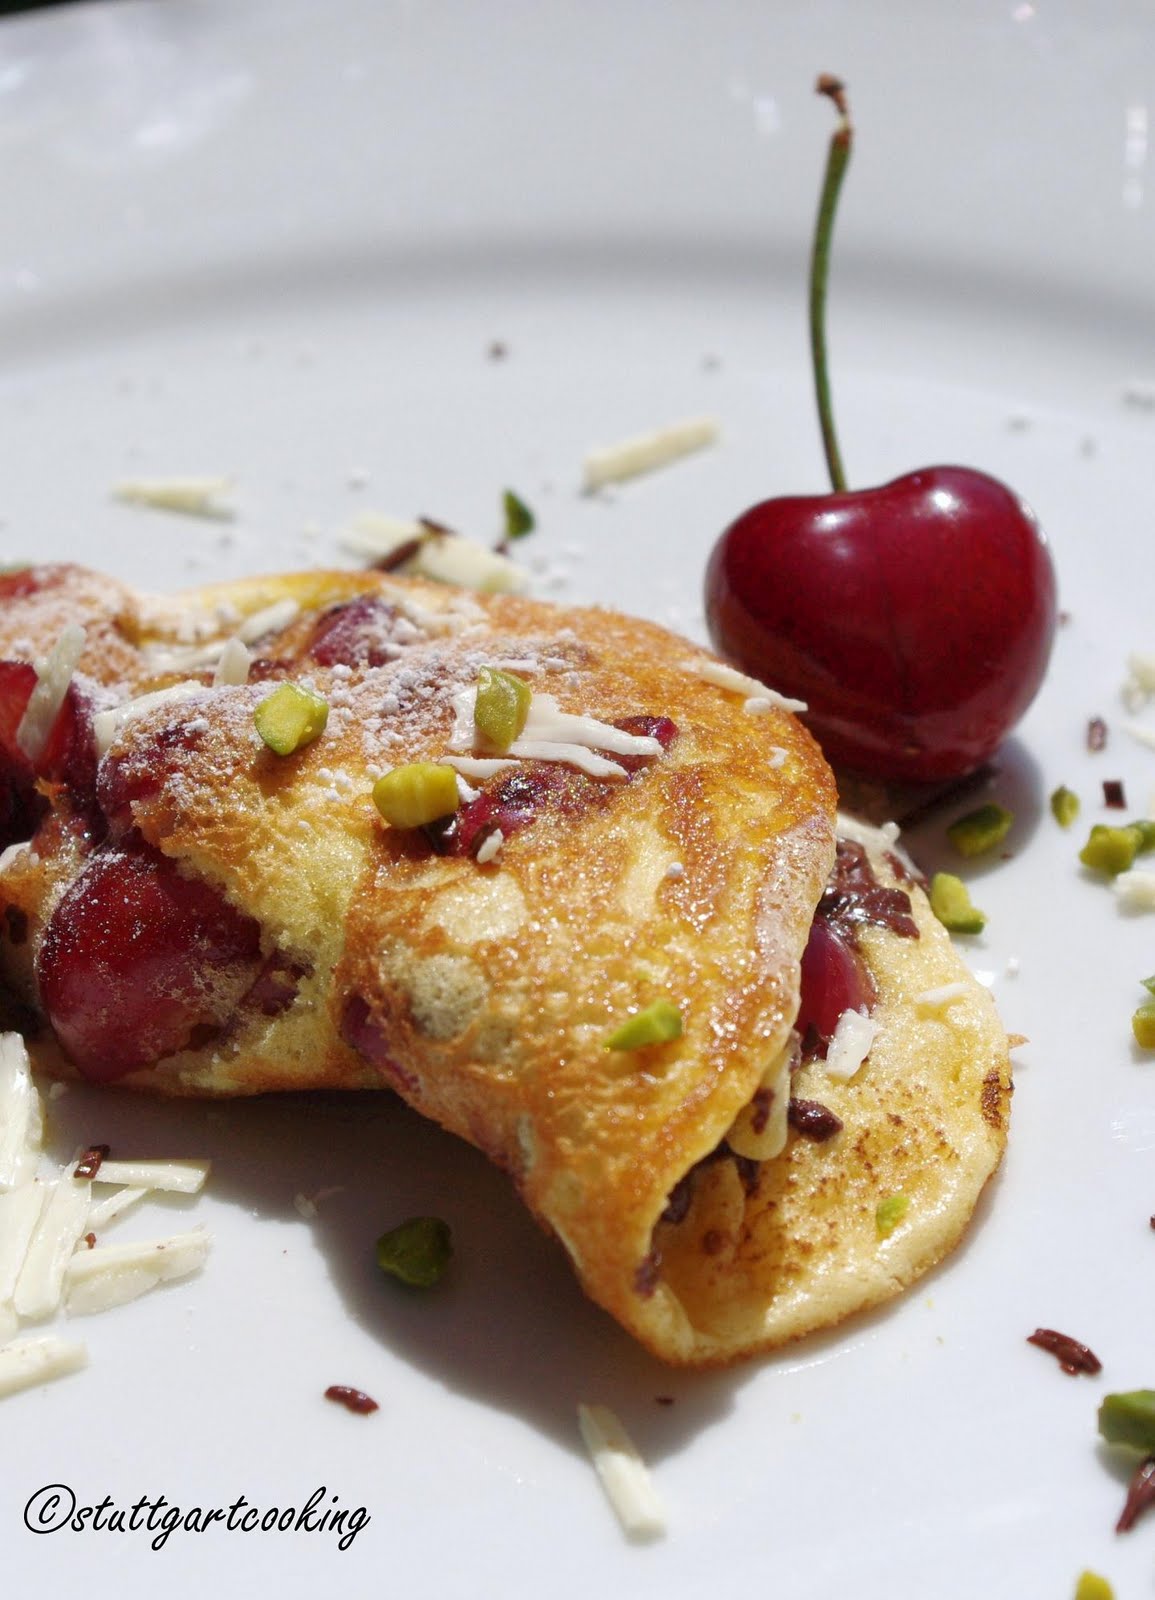 stuttgartcooking: Biskuit-Omelette mit Kirschen und zweierlei Schokolade